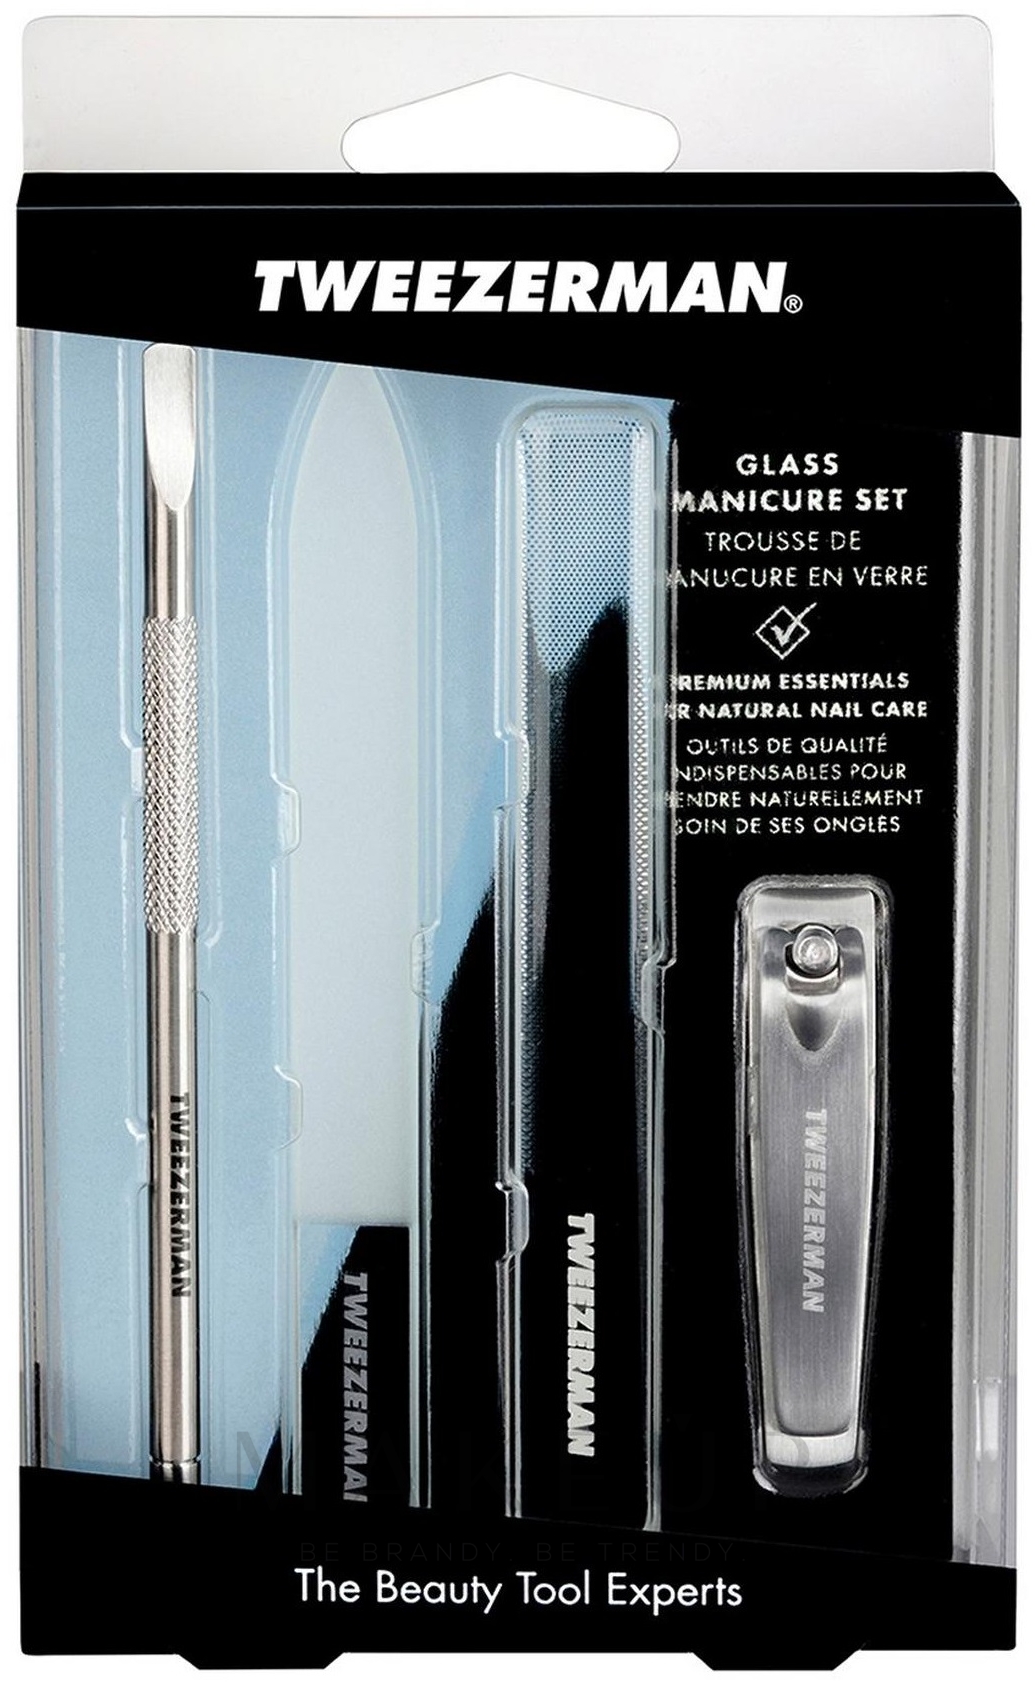 Tweezerman Set Manicure Maniküre-Set - Glass